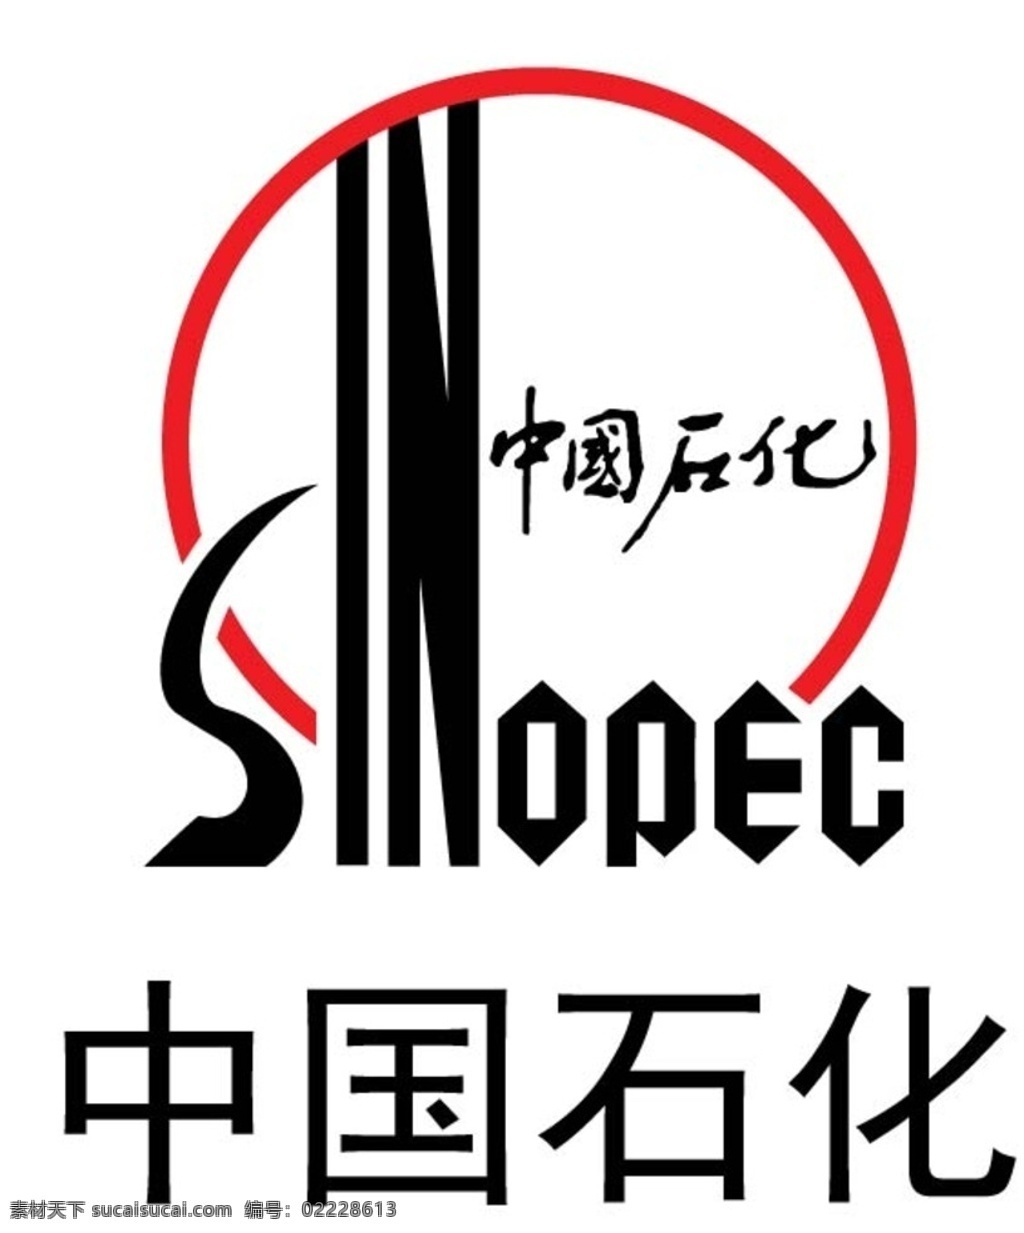 中国石化 logo 矢量图 中国石油化工 标志图标 企业 标志